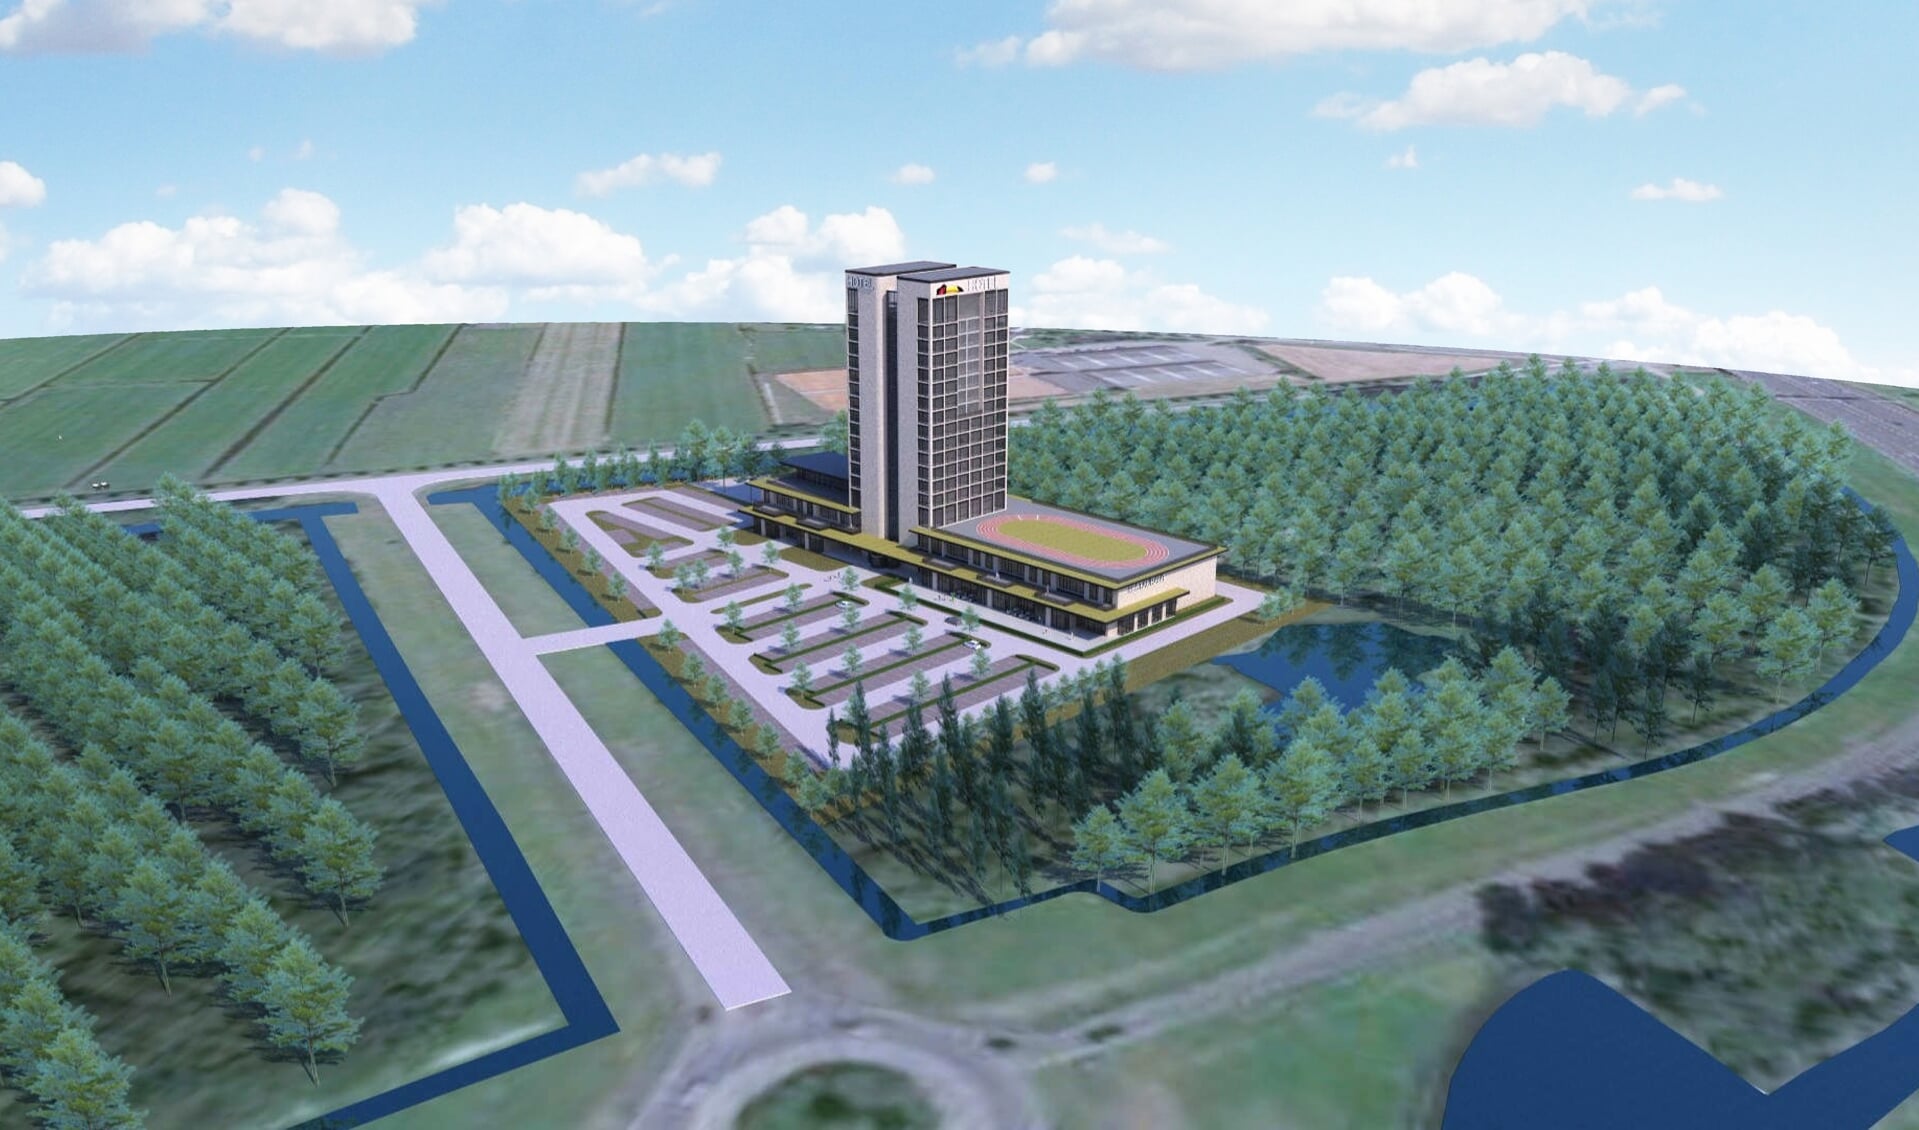 Het voorgestelde hotel telt 12 verdiepingen en zal omgeven worden door een oase aan groen en natuur.